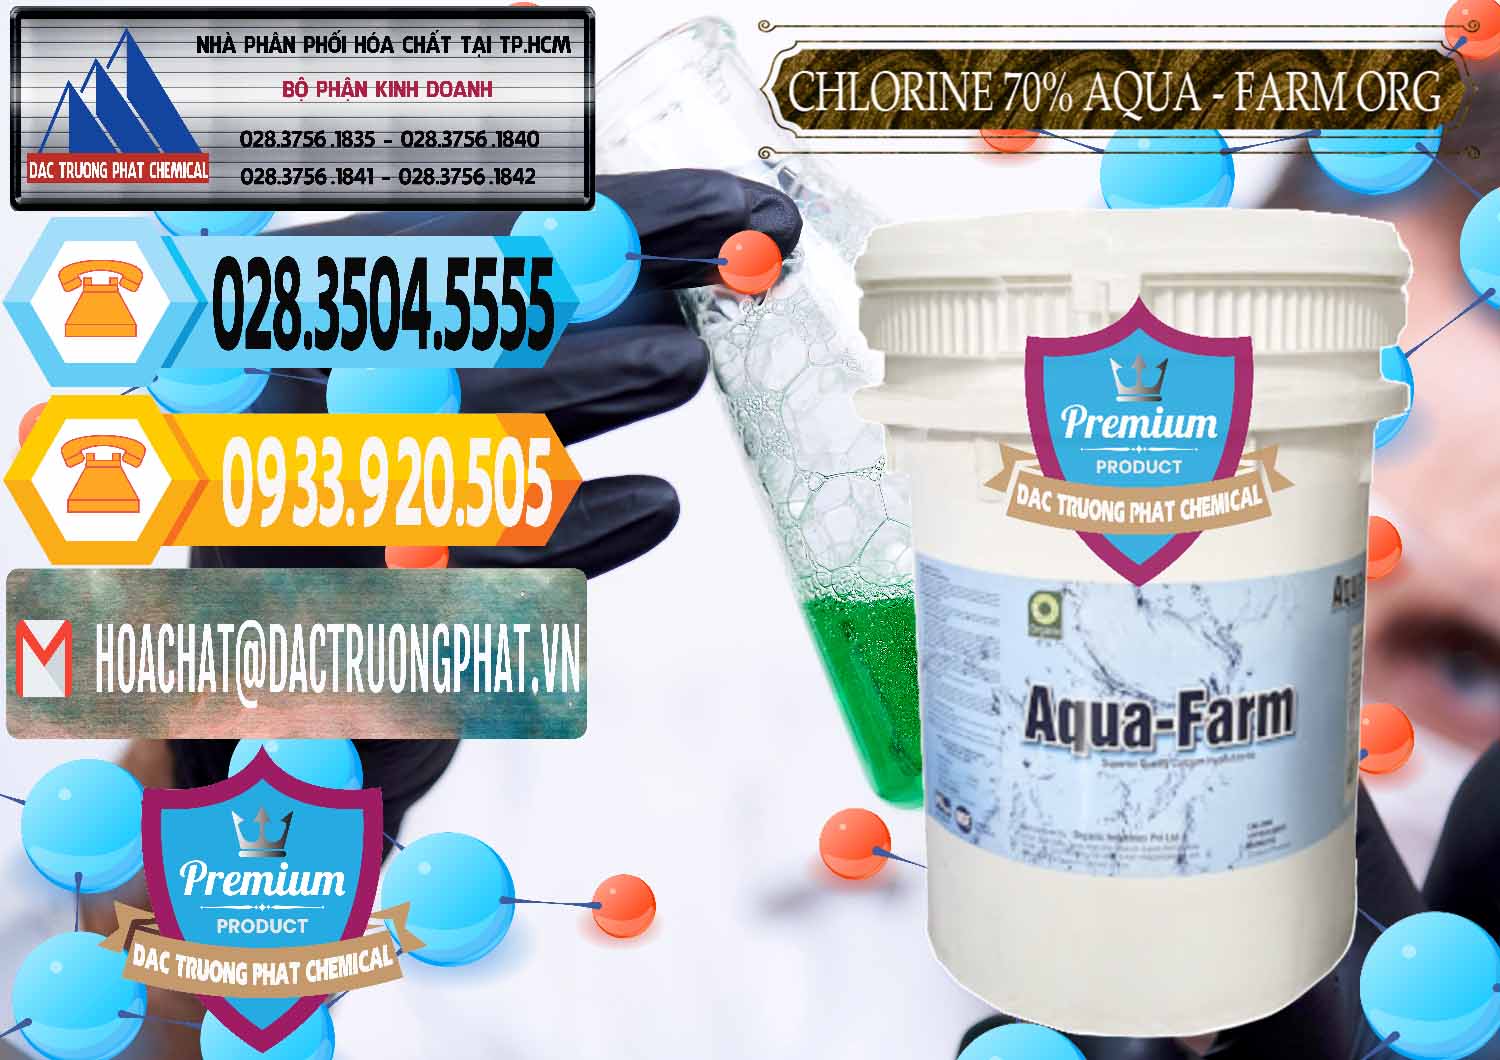 Đơn vị chuyên cung ứng ( bán ) Chlorine – Clorin 70% Aqua - Farm ORG Organic Ấn Độ India - 0246 - Nhà cung cấp và kinh doanh hóa chất tại TP.HCM - hoachattayrua.net